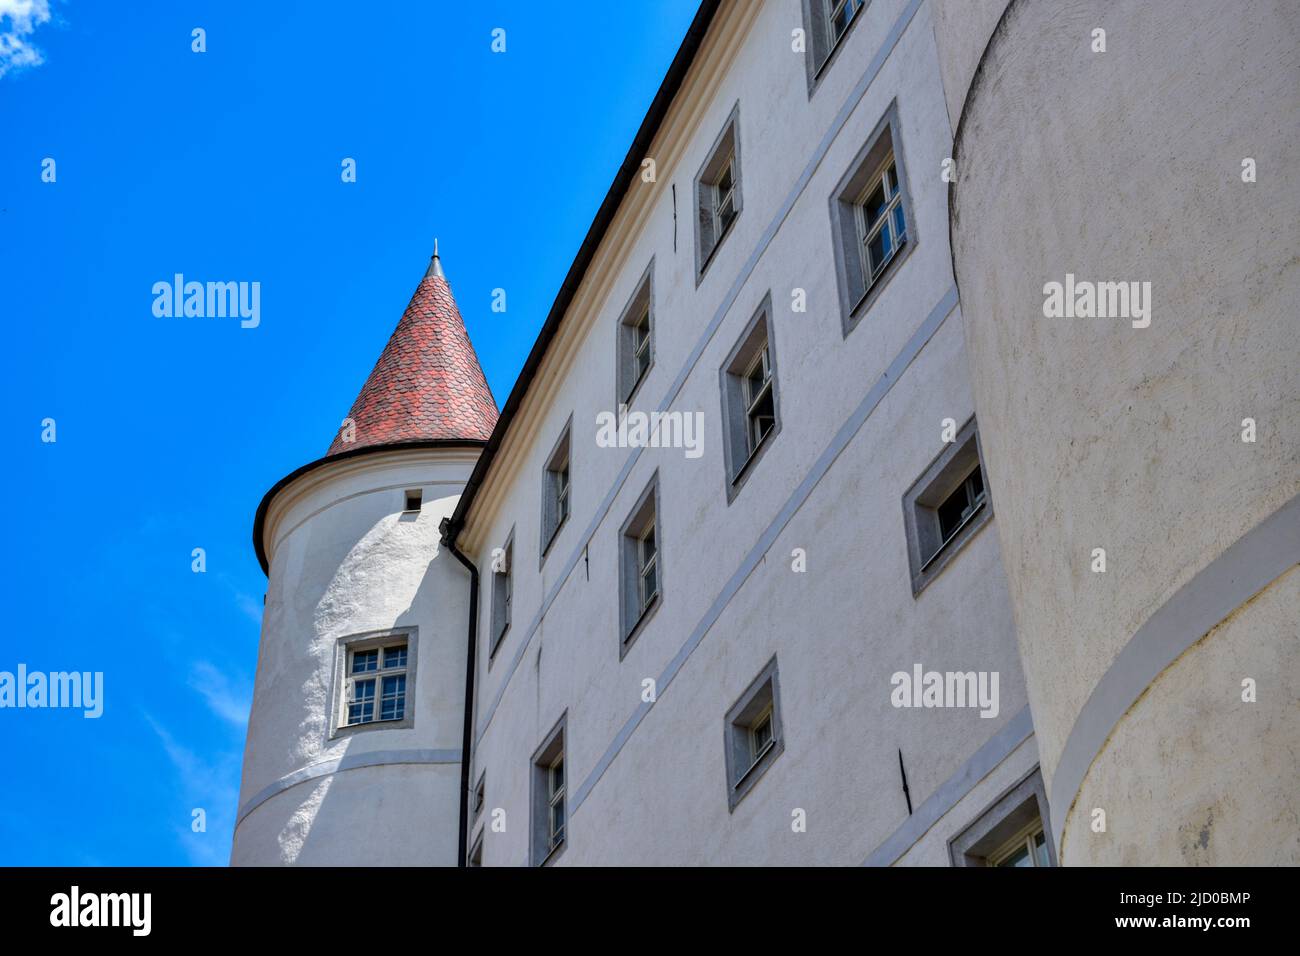 Schloss, Weinberg, Kefermarkt, Mühlviertel, Renaissanceschloss, Burg, Renaissance, Schlossanlage, Mittelalter, imposant, wehrhaft, Turm, Gasse, Rundtu Stock Photo